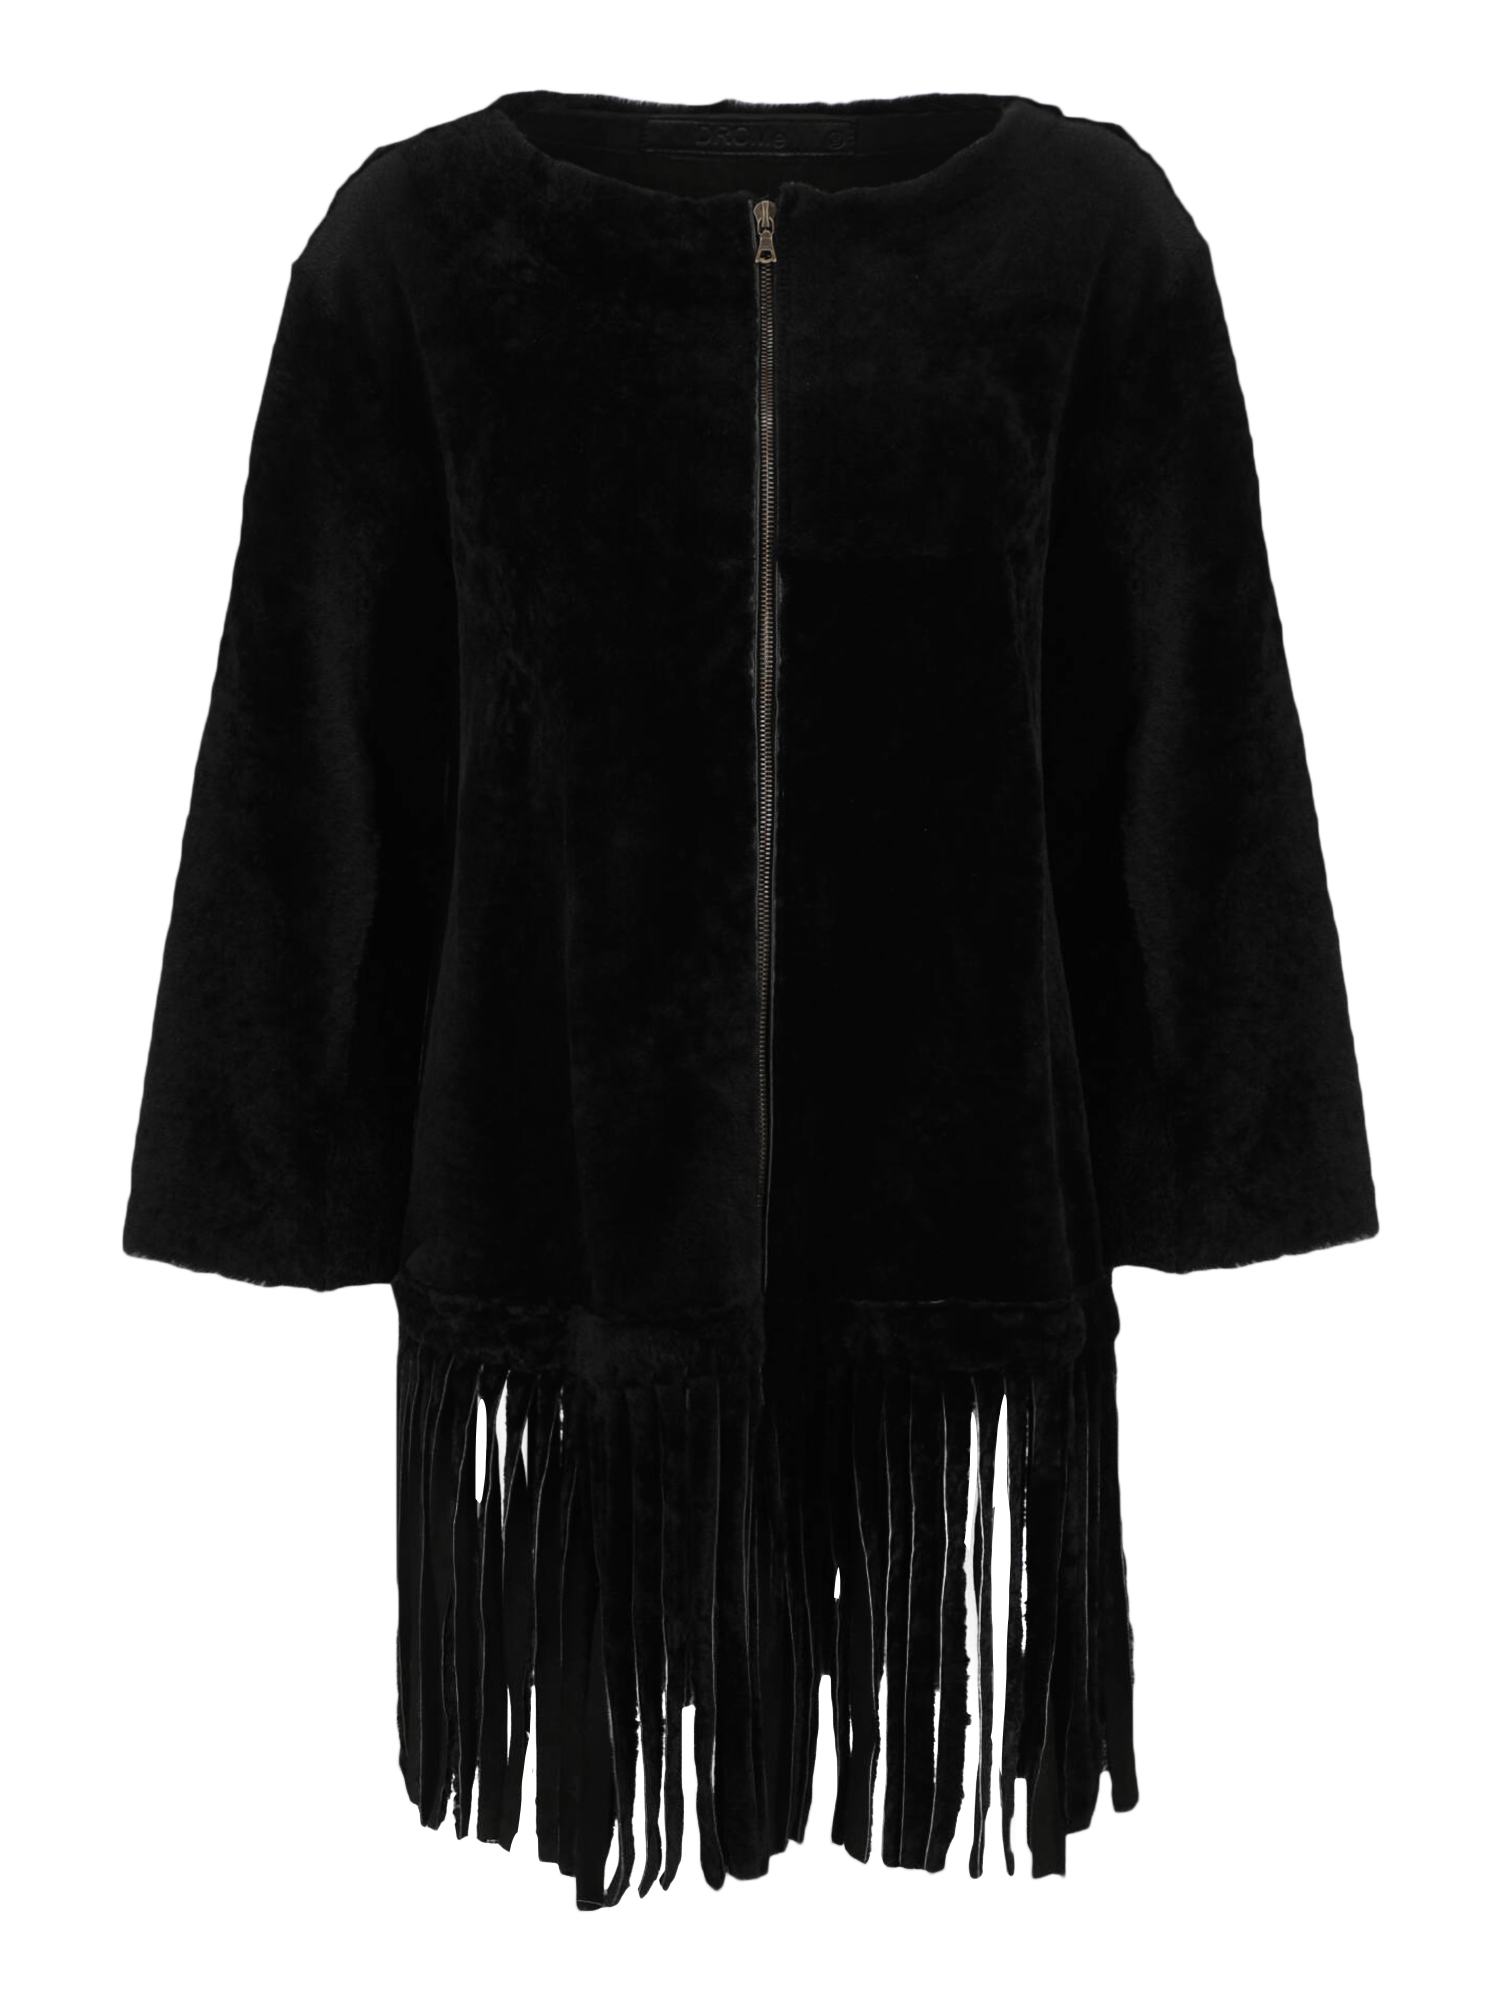 Manteaux Et Blousons Pour Femme - Drome - En Leather Black - Taille:  -